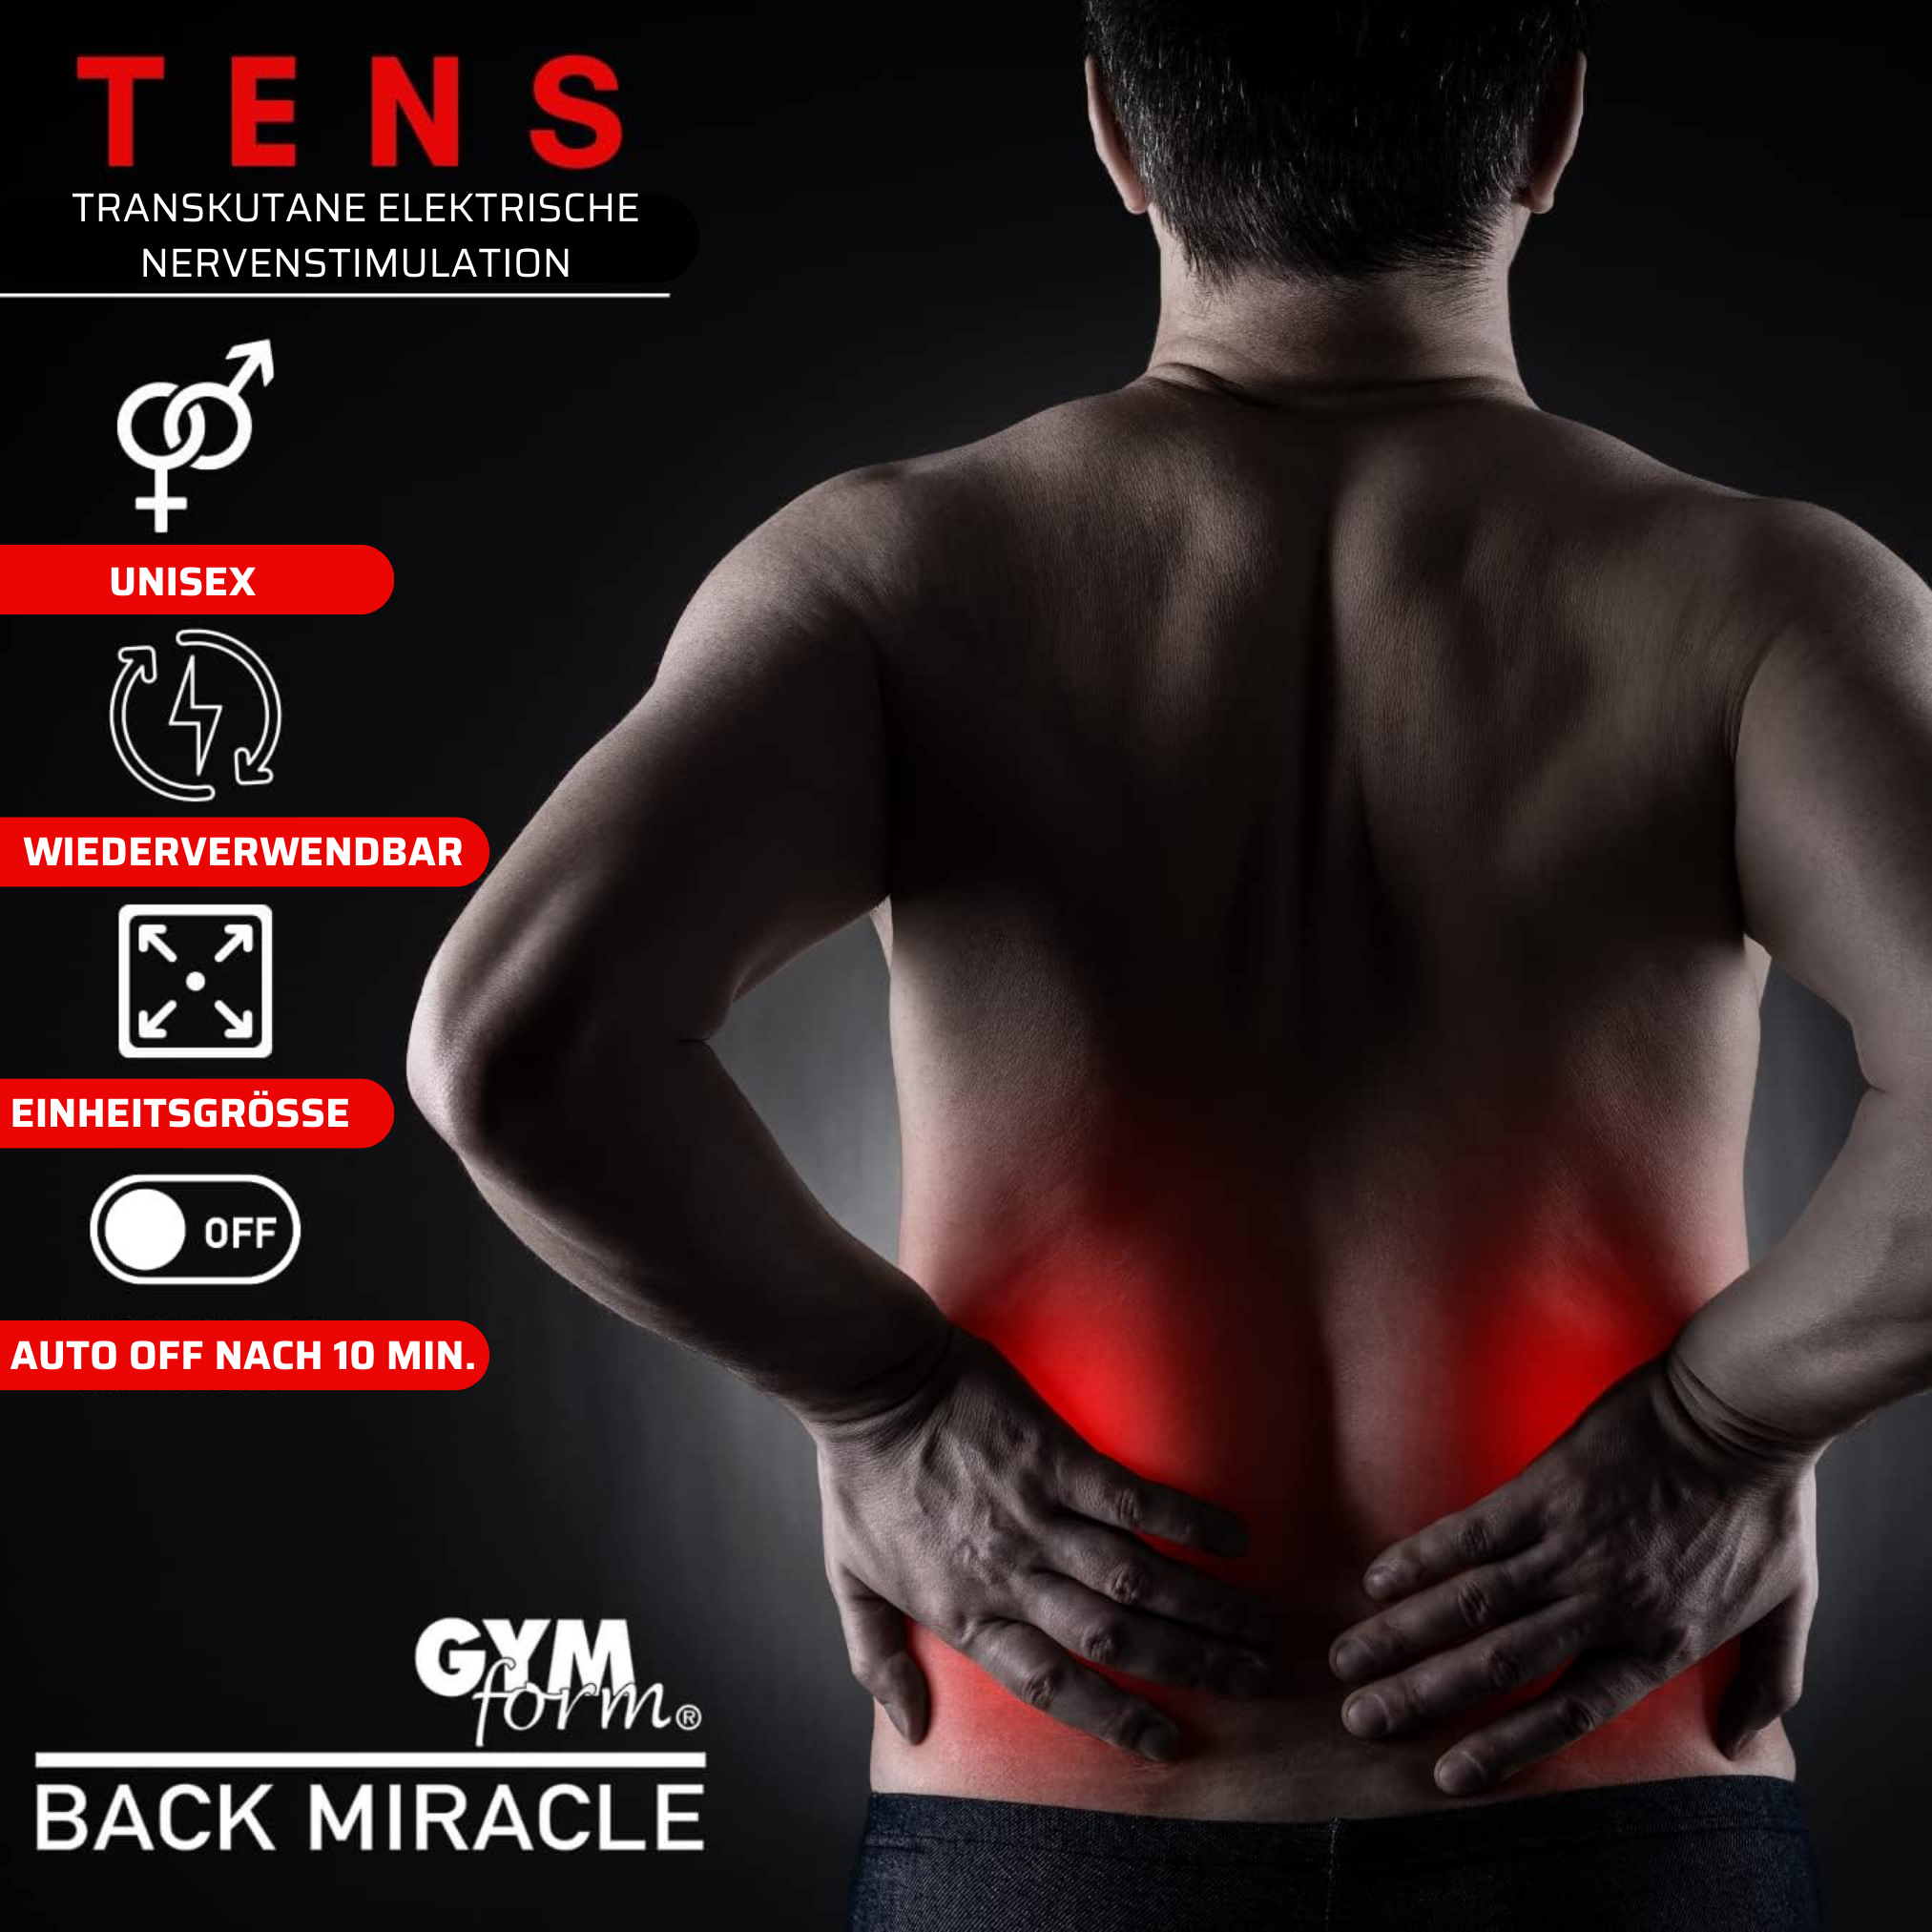 schwarz Back Miracle Elektrische GYMFORM Sport EMS Muskelstimulation,